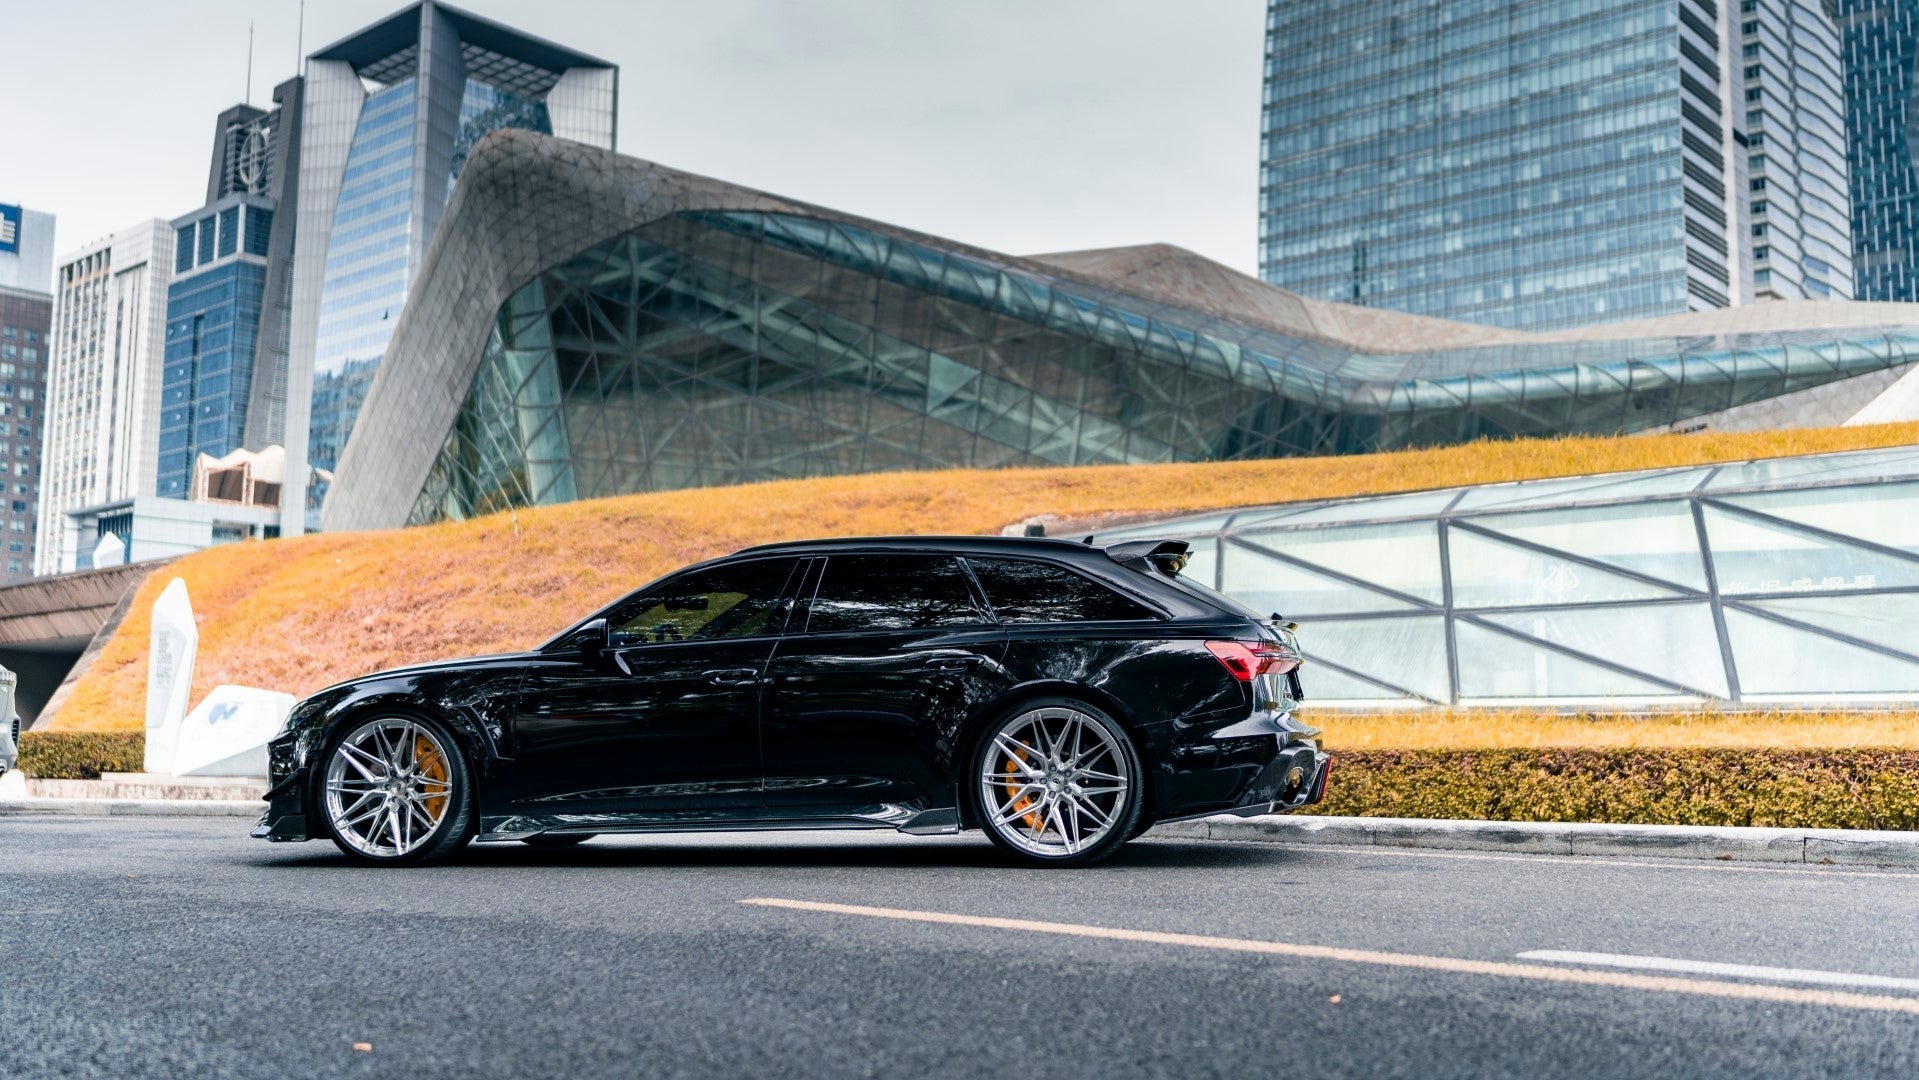 Karbel Carbon Fiber Rear Tunk Roof Spoiler for Audi RS6 C8 2020-ON - Performance Spedshop